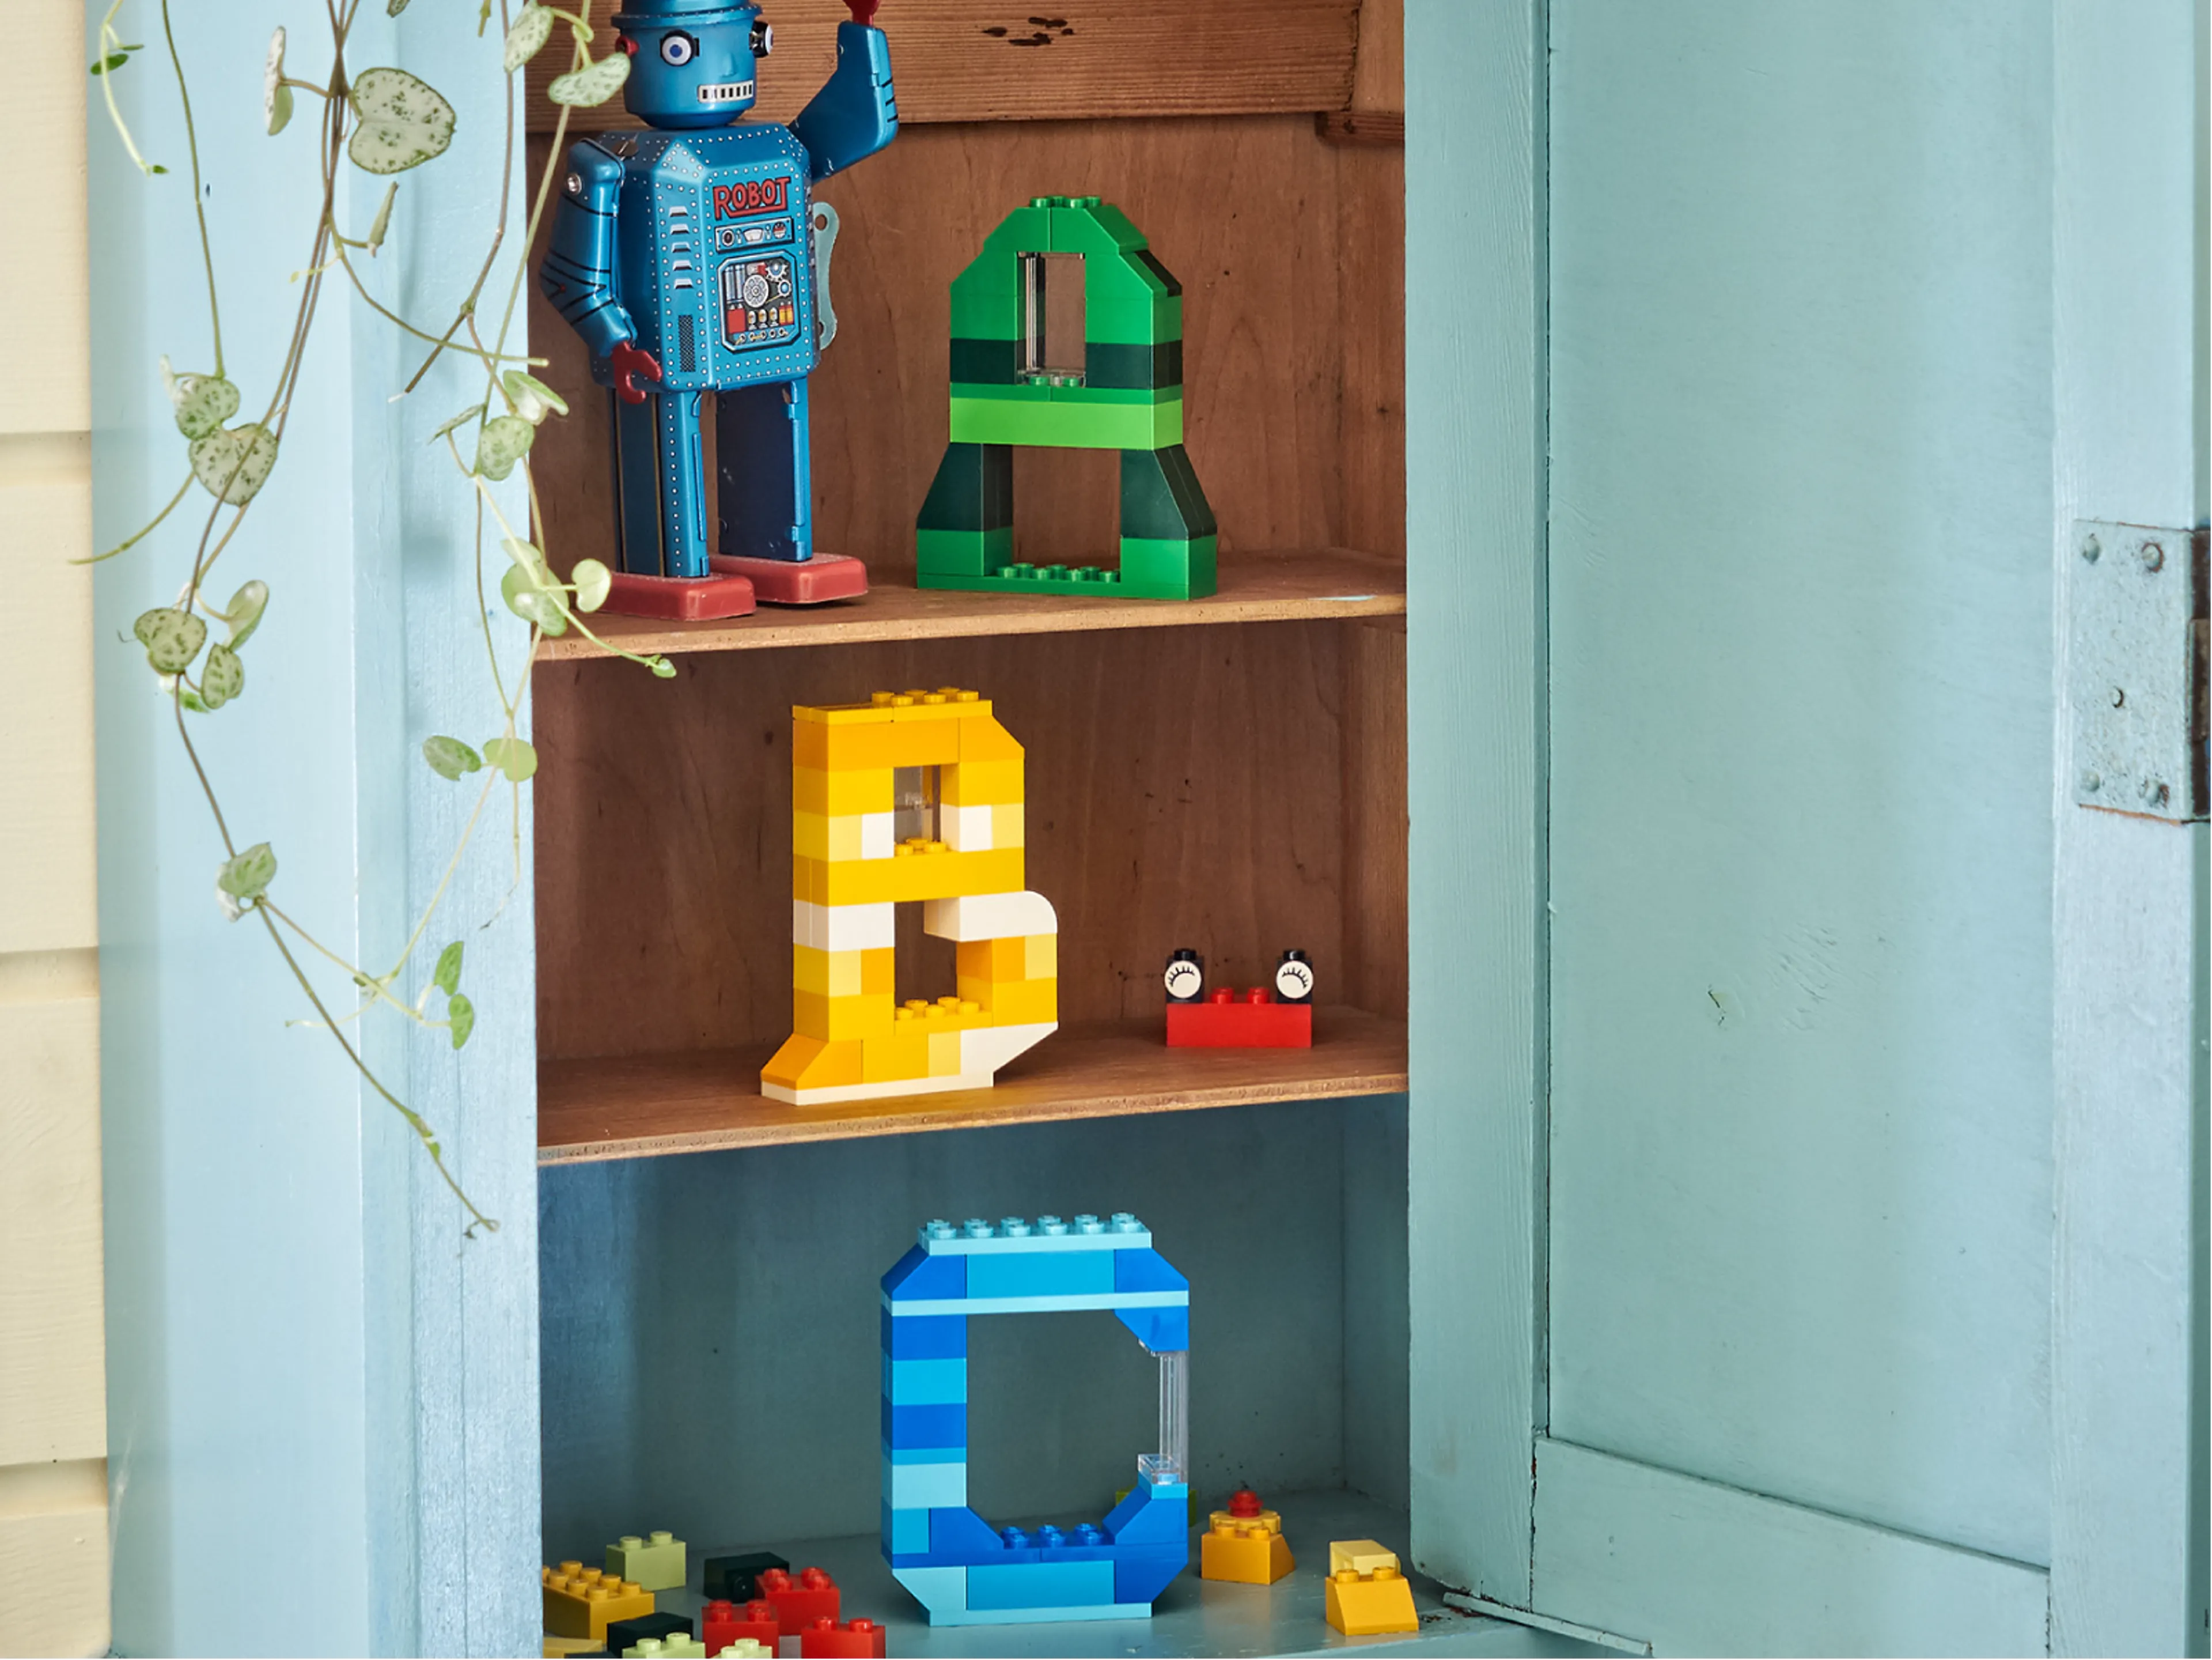 LEGO-Steine, die die Buchstaben A, B und C bilden